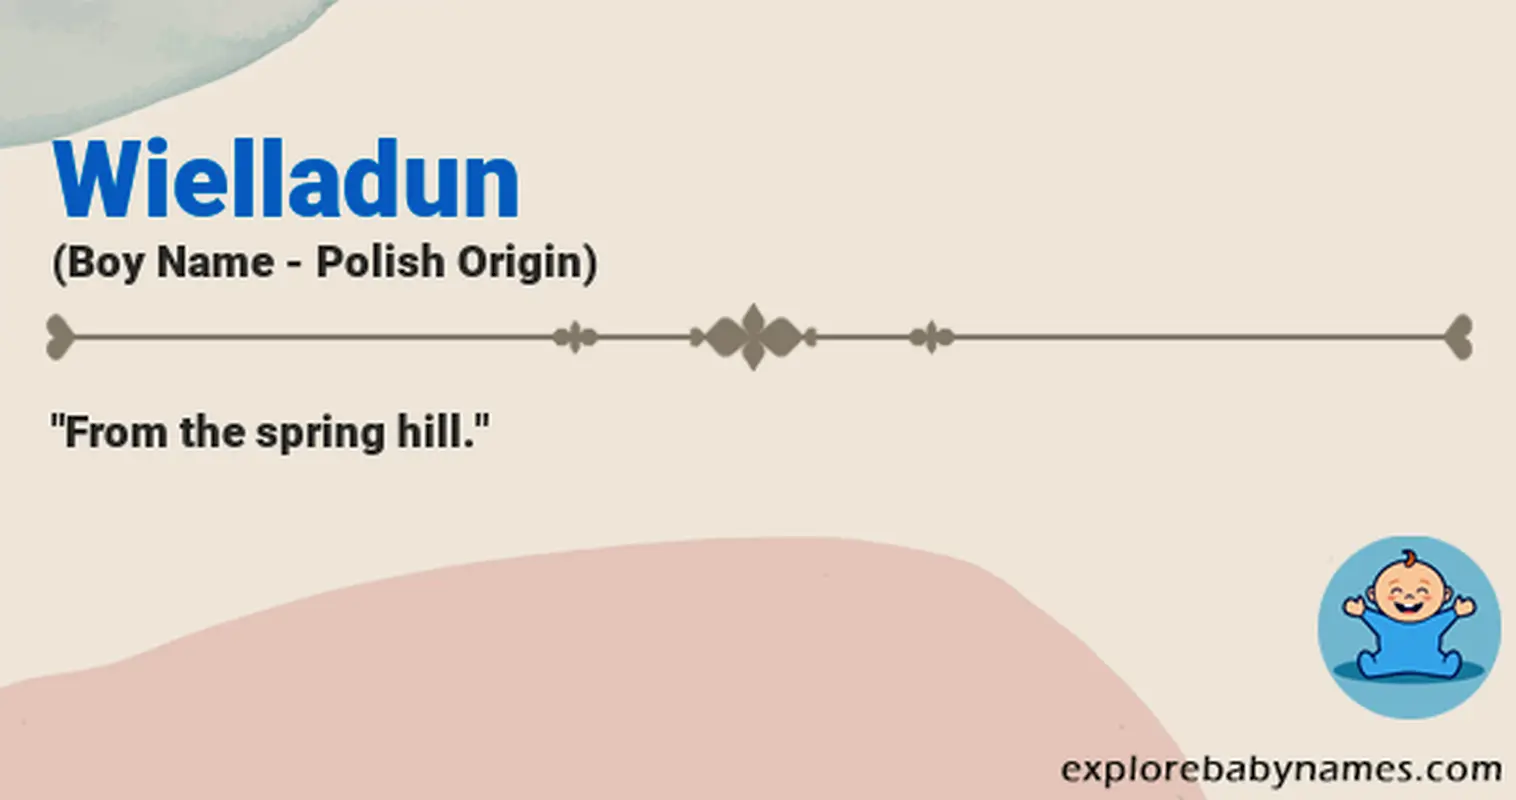 Meaning of Wielladun